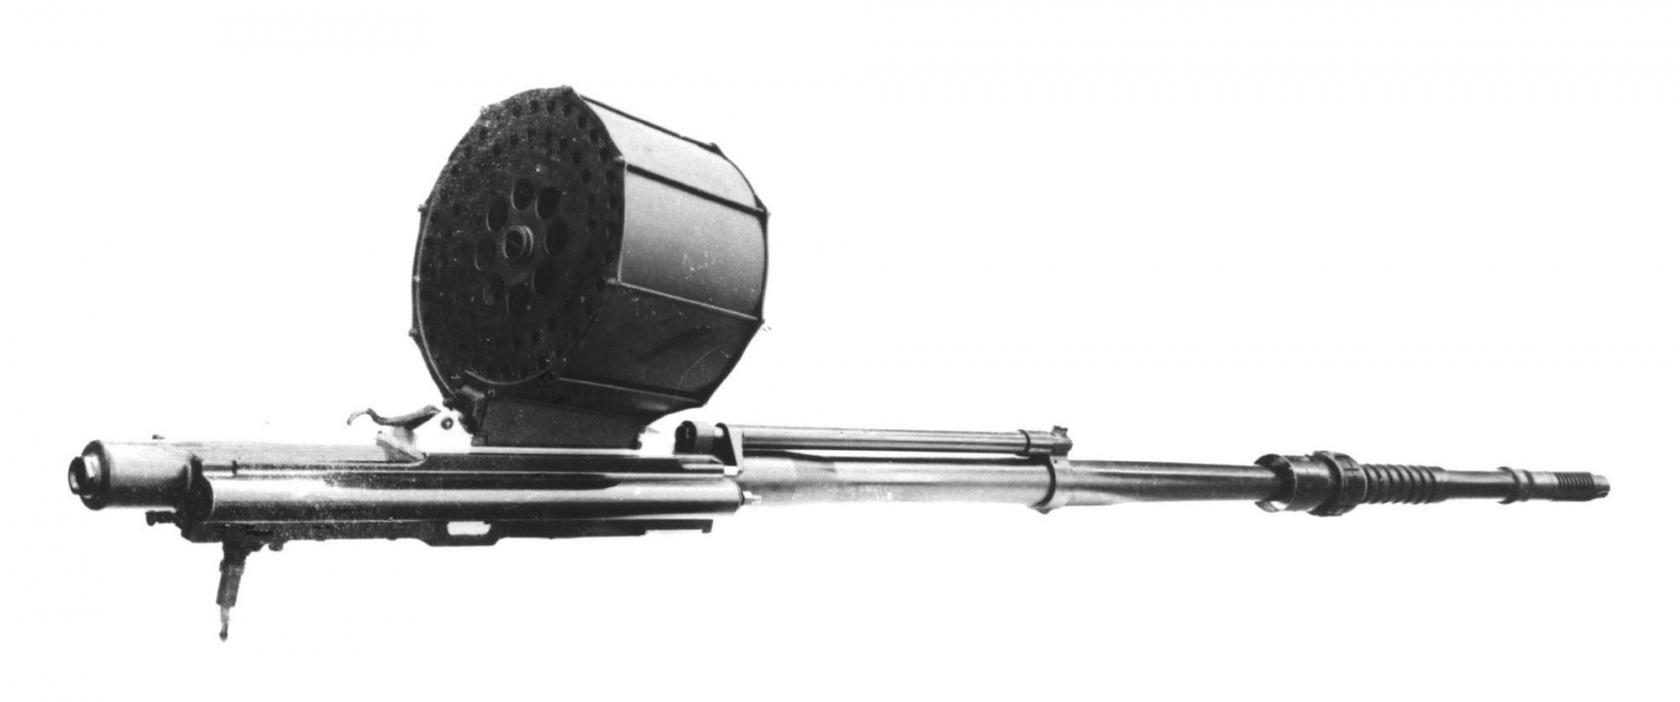 Один из прототипов 20-мм пушки HS.404